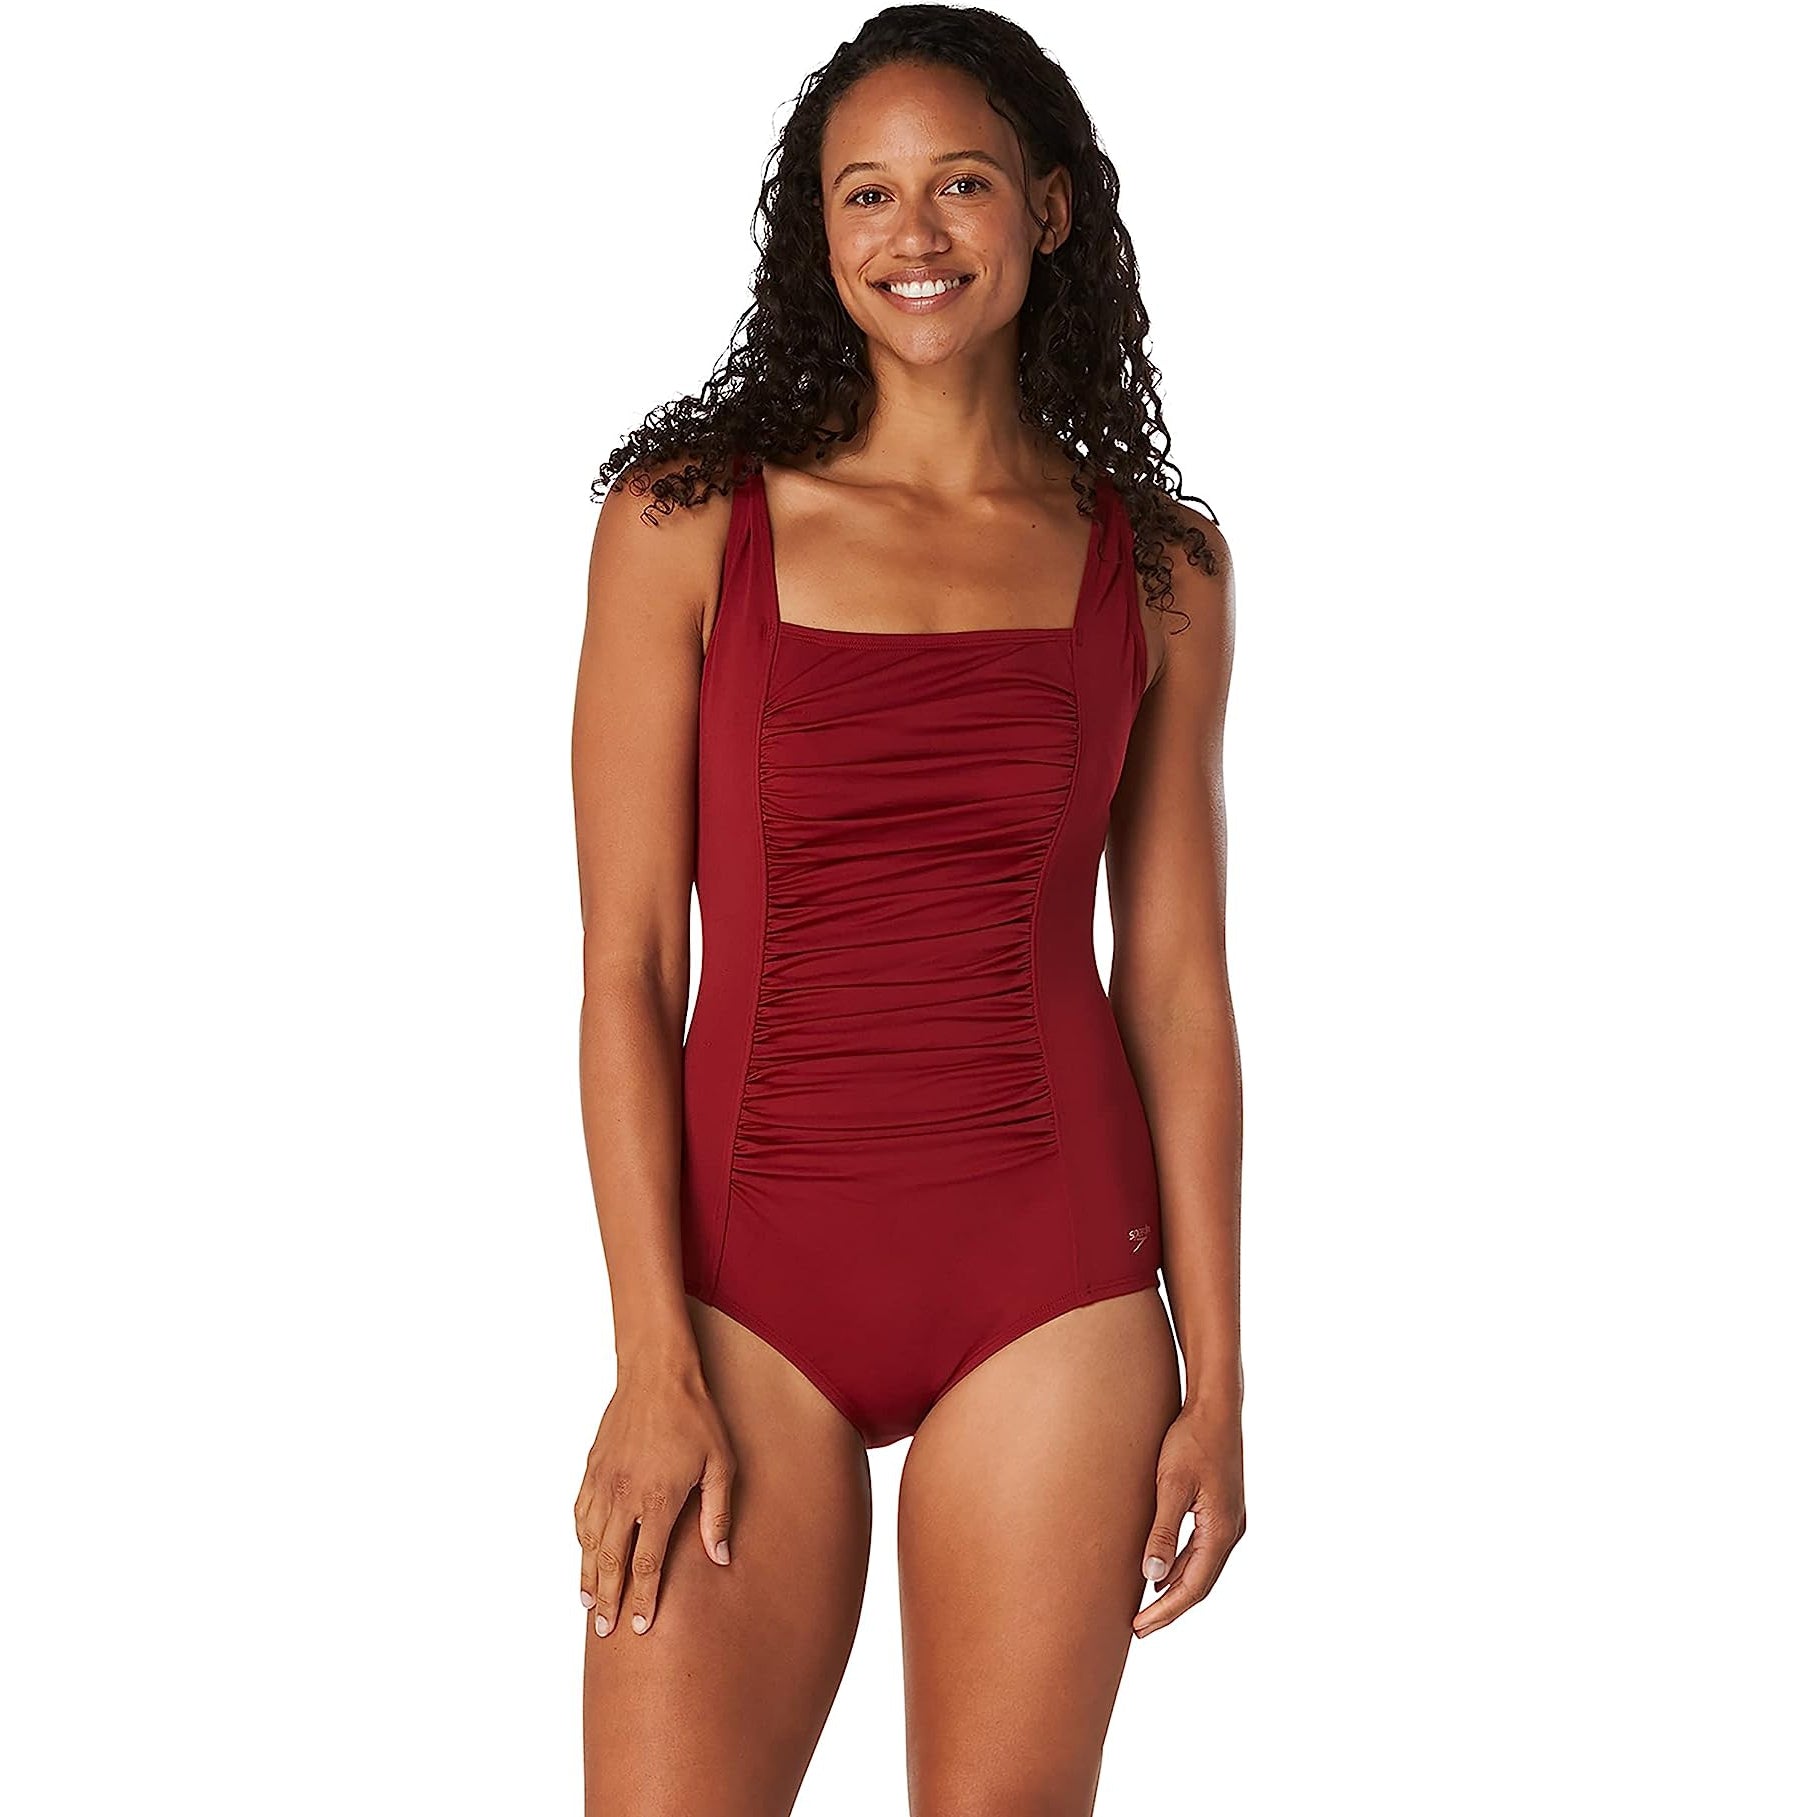 Women's Spyder Swimwear − Sale: at $36.99+